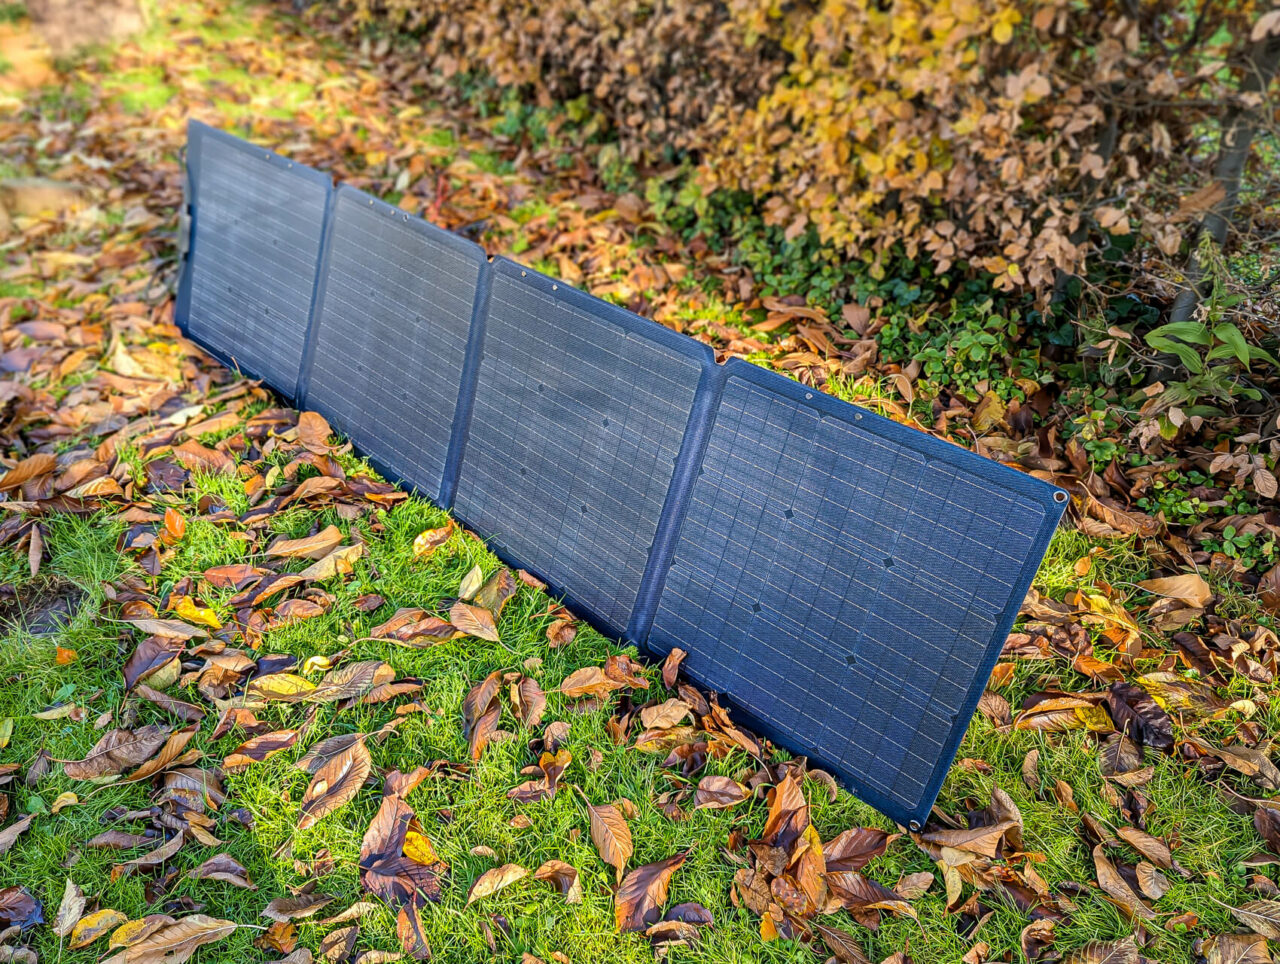 Zendure 200W Solar Panel - aufgebaut, stehend, Vorderseite, Sonne, Herbst, Laub